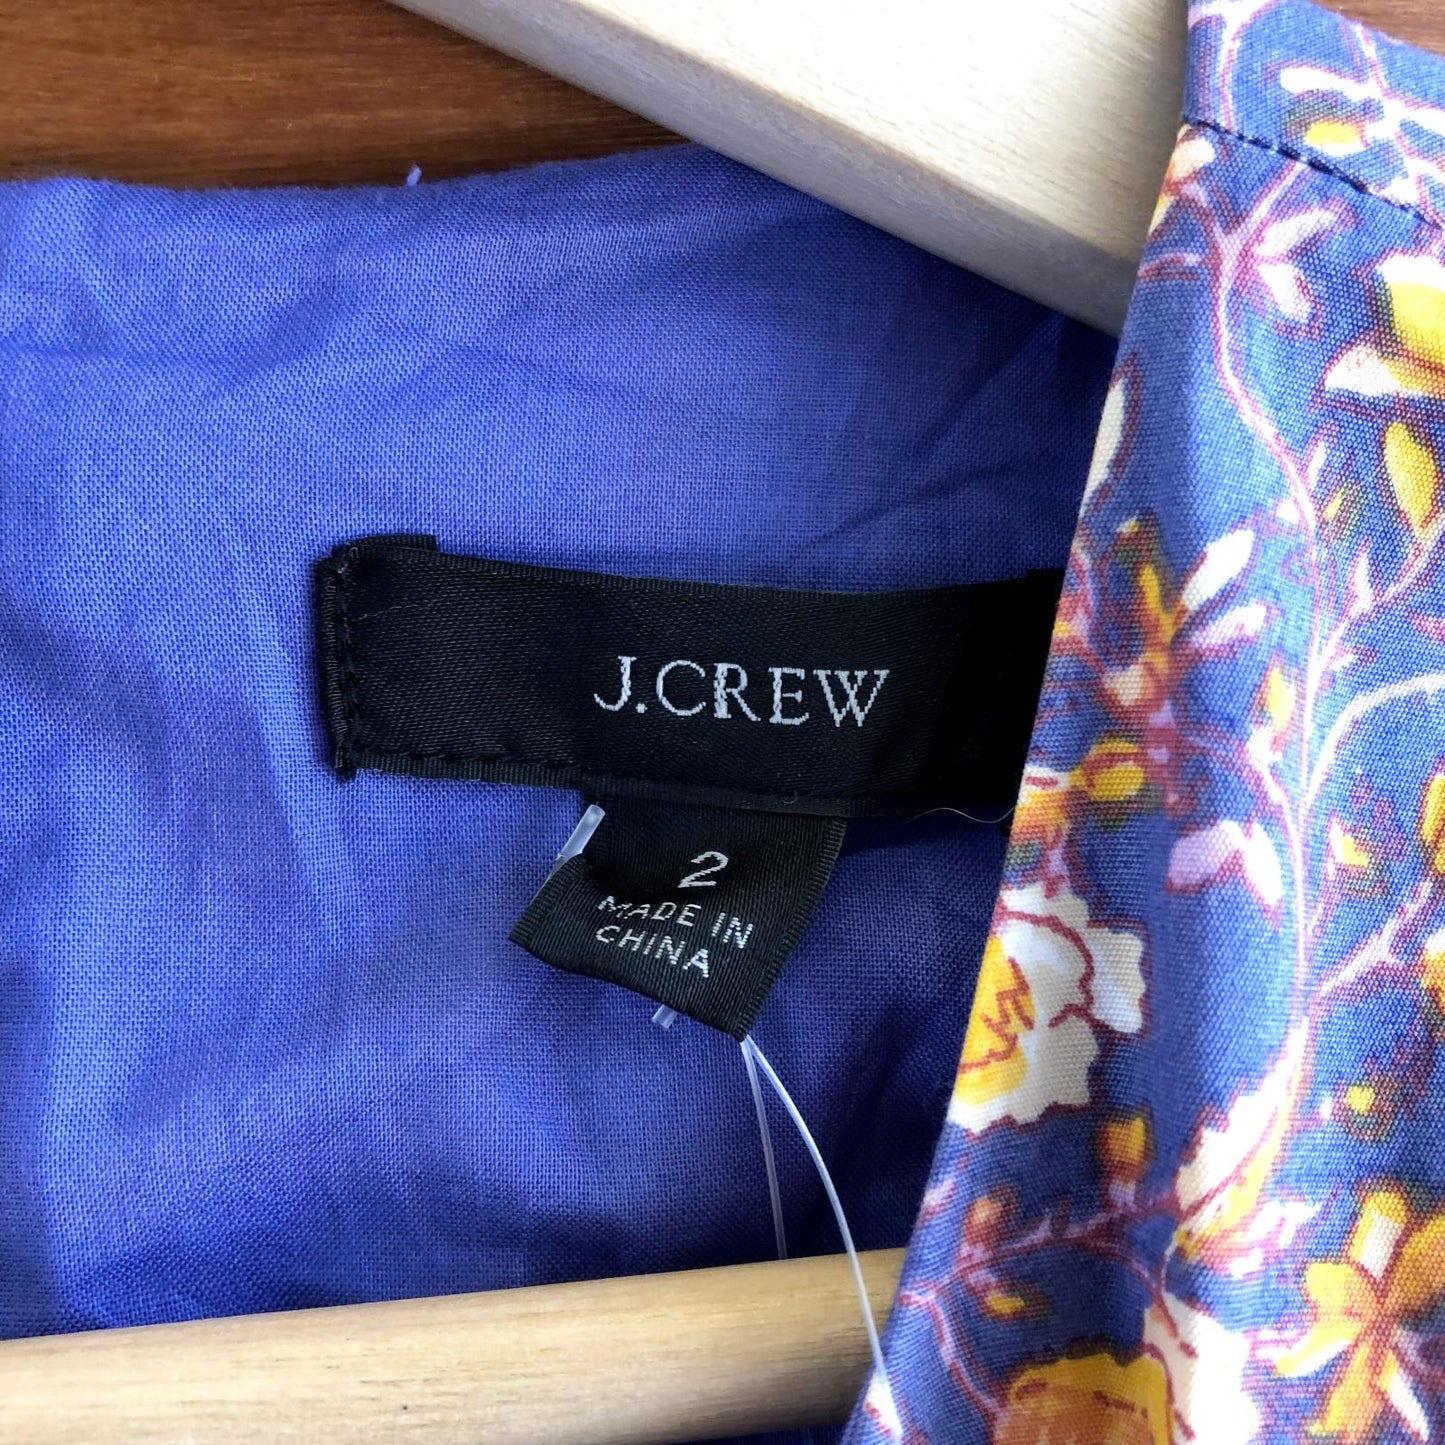 2 - J Crew NEW $168 Midnight Floral Purple Cutout Cotton Poplin Dress 0105MR